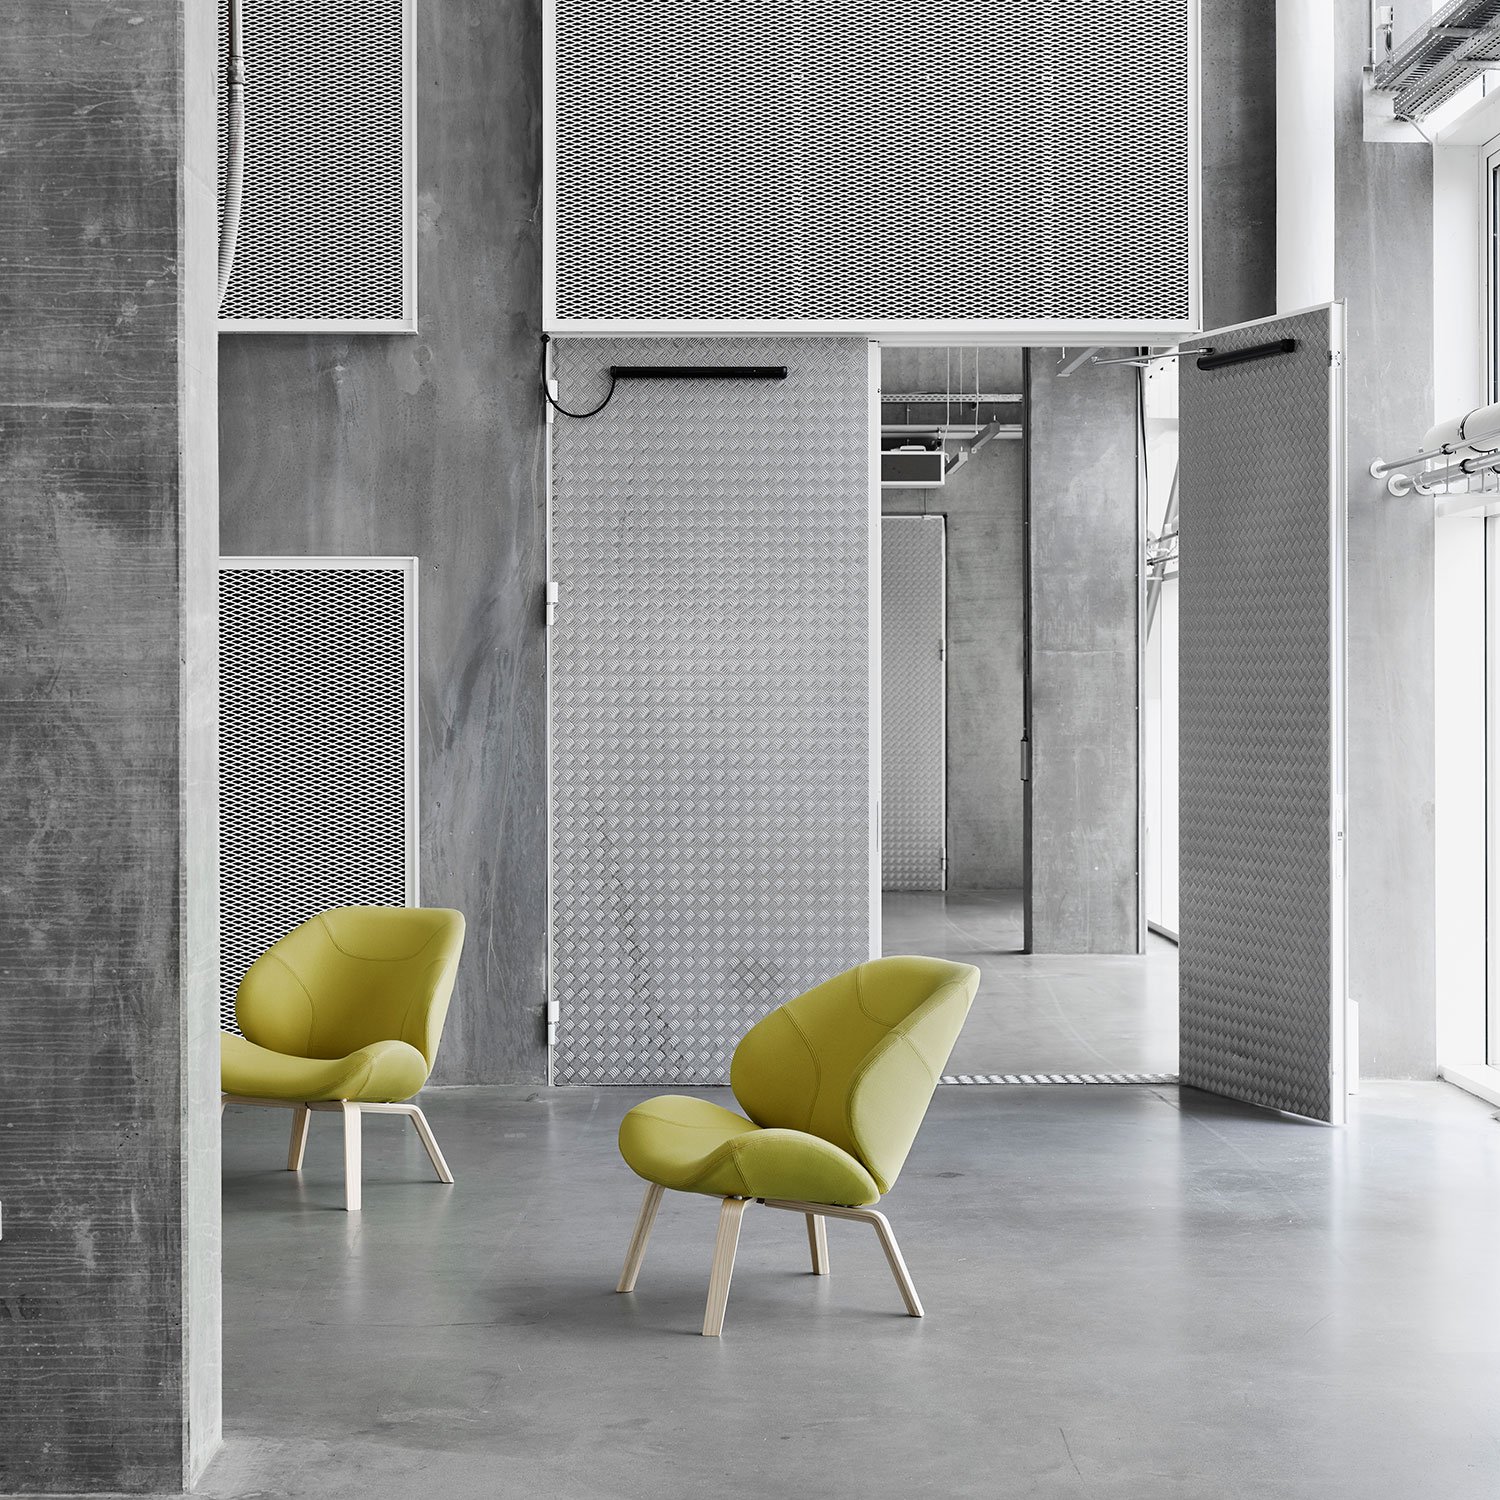 Eden Chair from Softline, designed by busk+hertzog